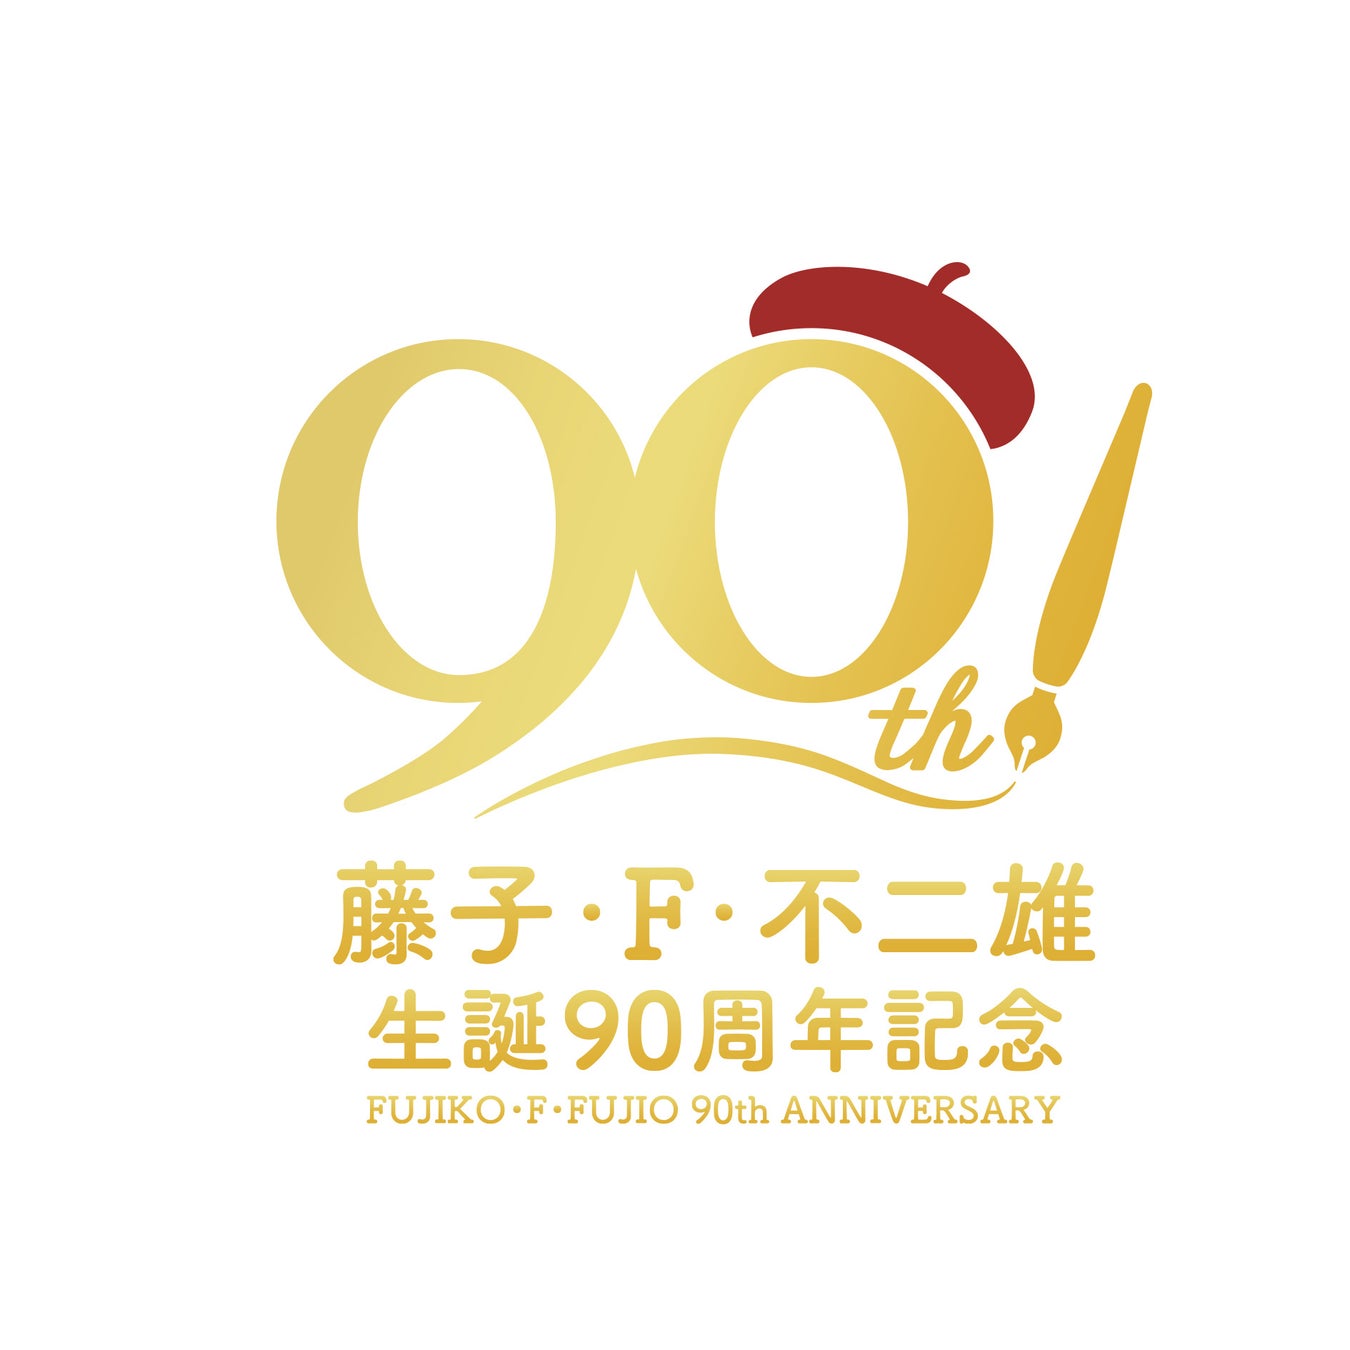 藤子・F・不二雄生誕90周年記念企画。藤子・F・不二雄ワールドの名曲を音楽配信で楽しもう！